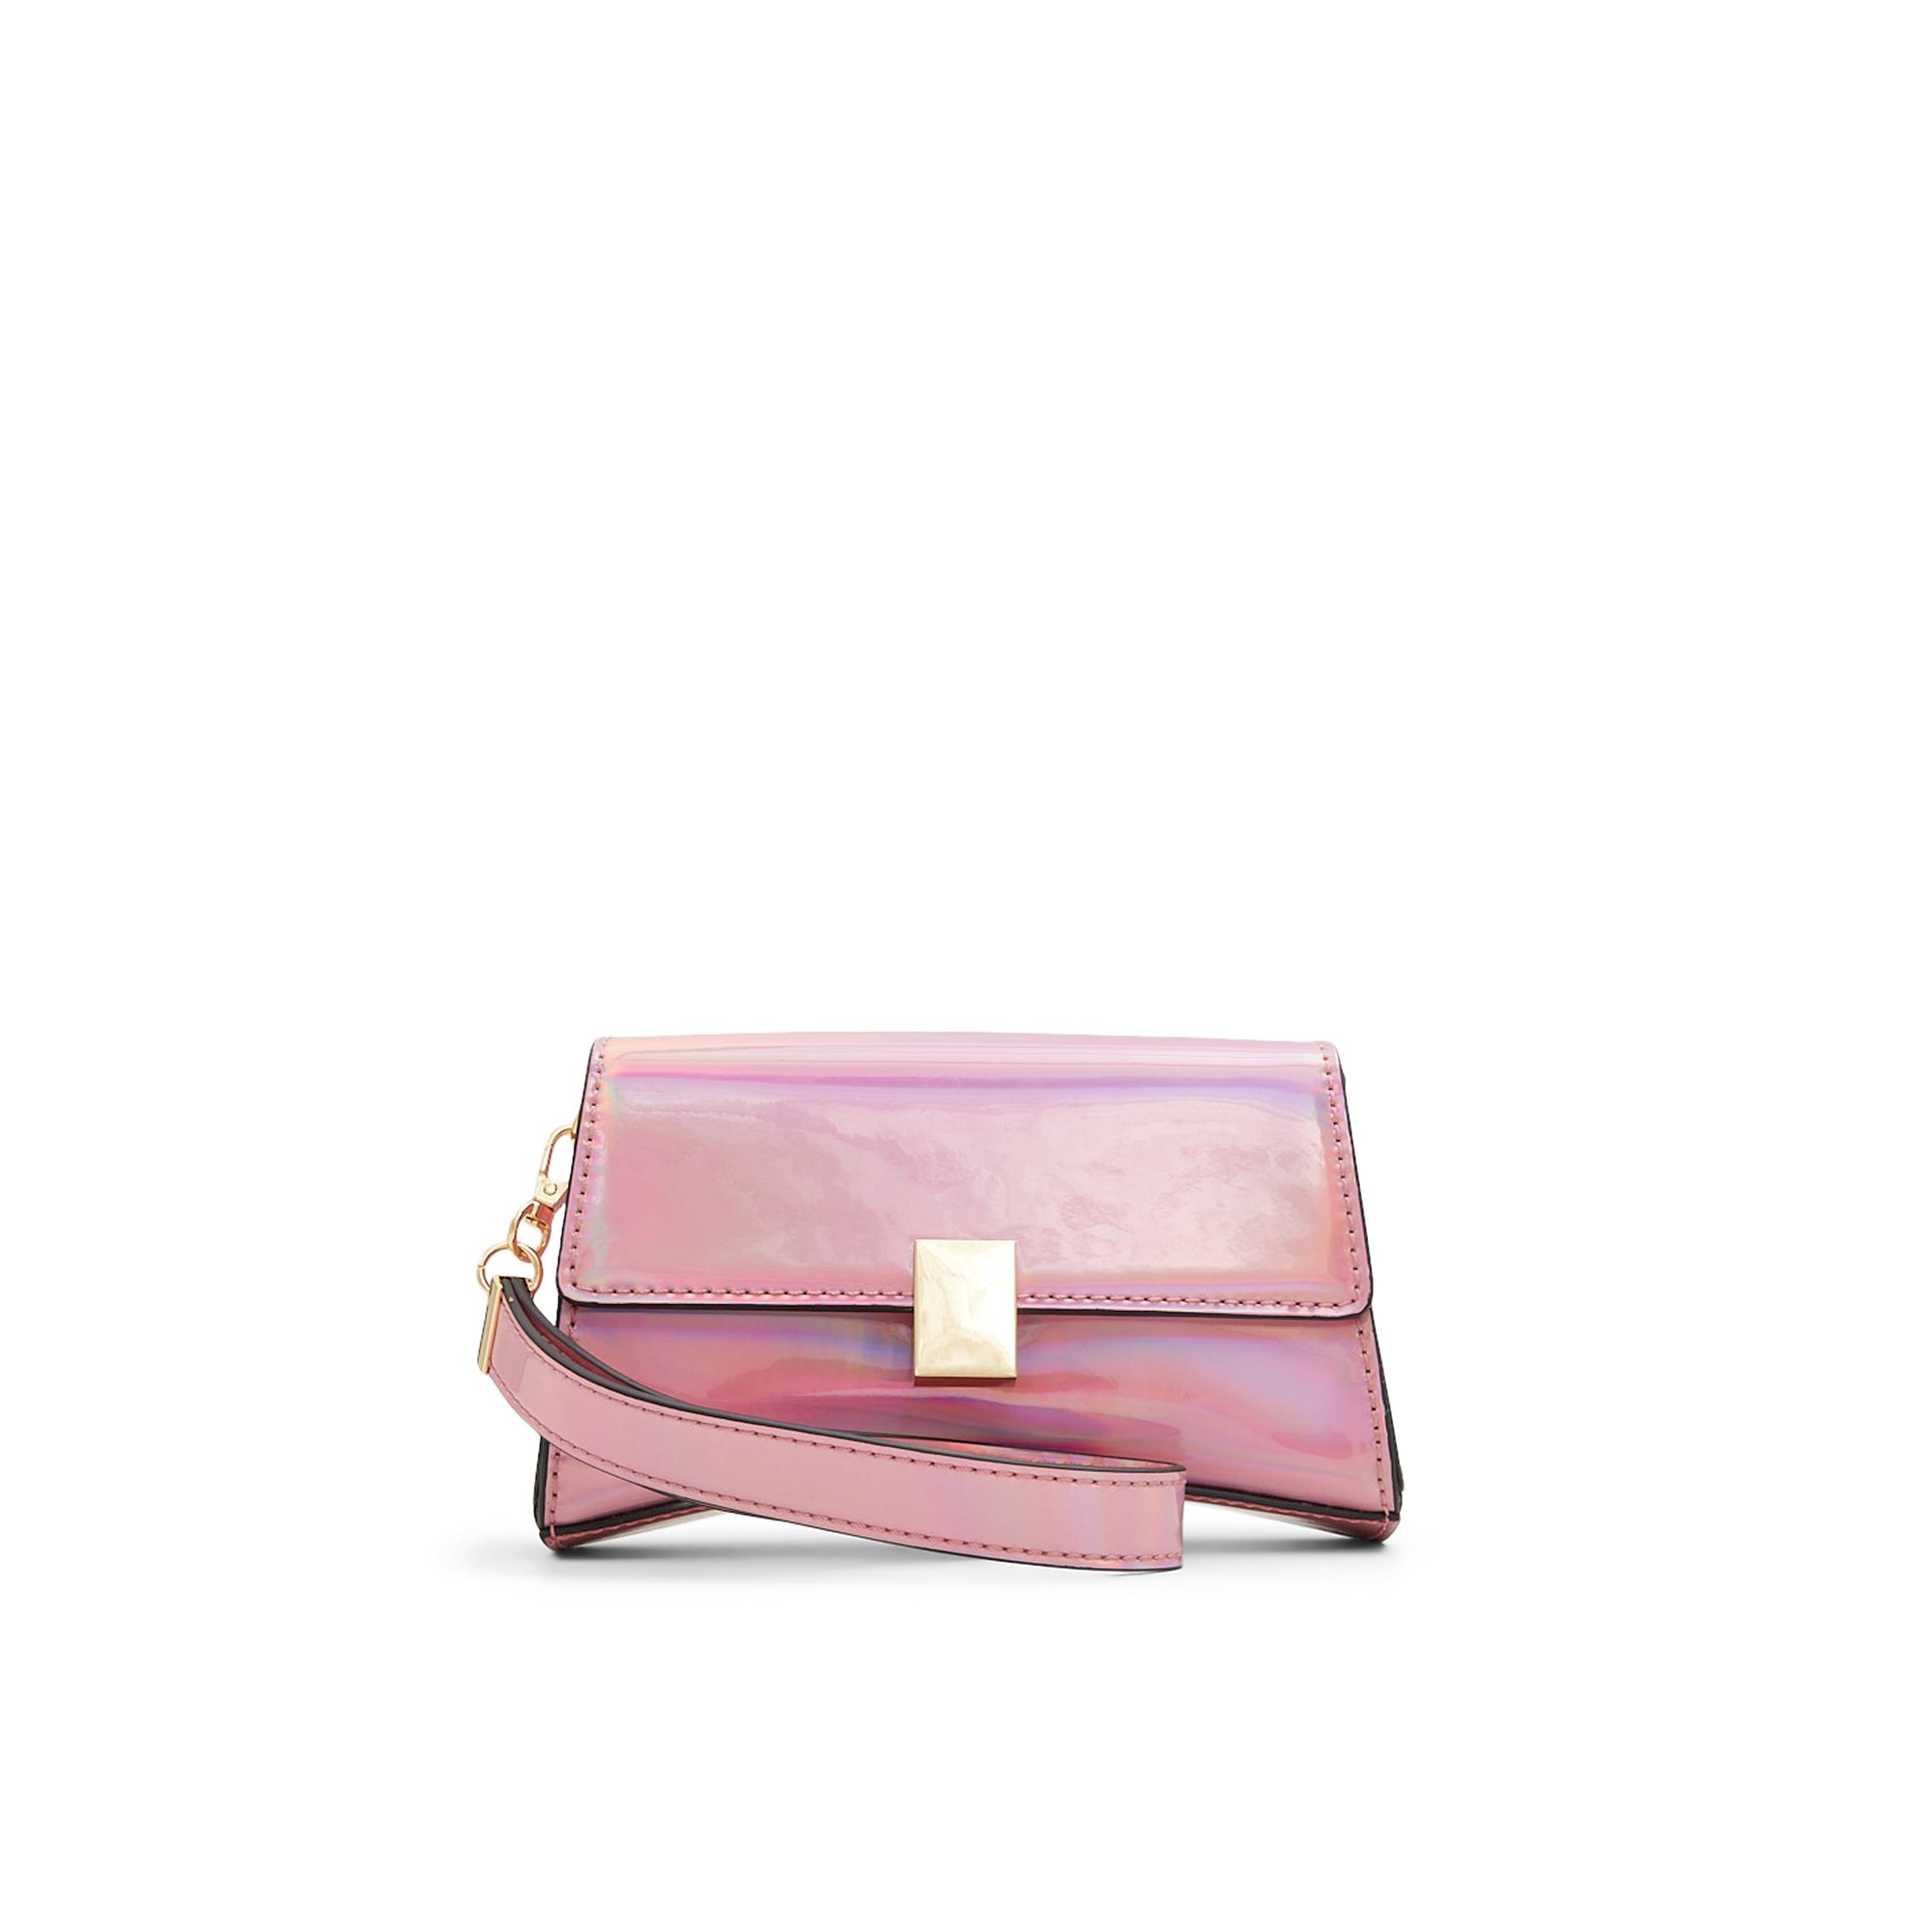 ALDO Cleeox - Women's Clutches & Evening Bag Handbag - Pink